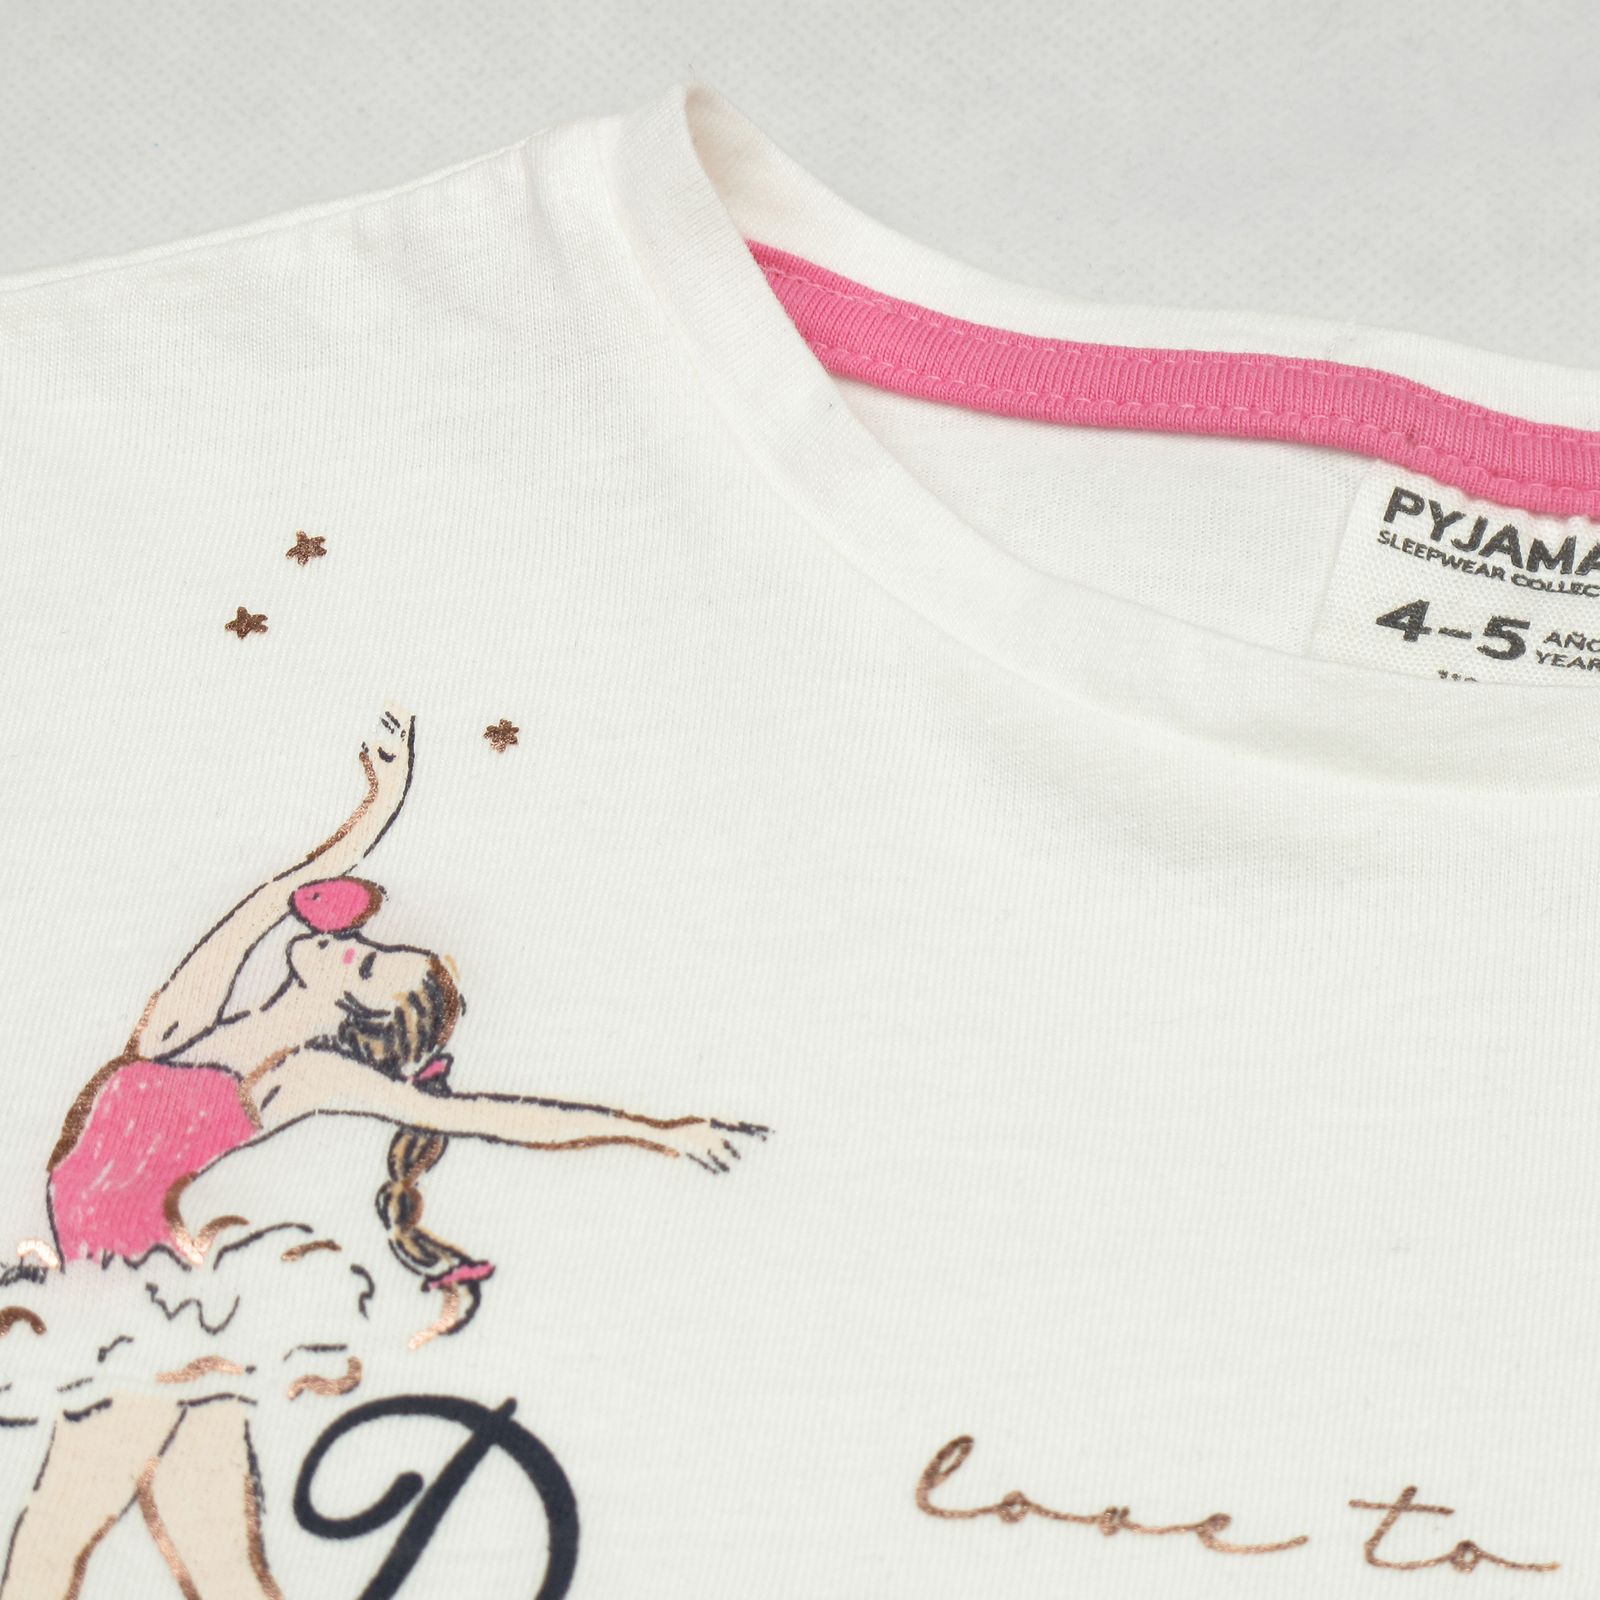 ست تی شرت و شلوارک دخترانه پی جامه مدل PY-PK طرح باله -  - 3